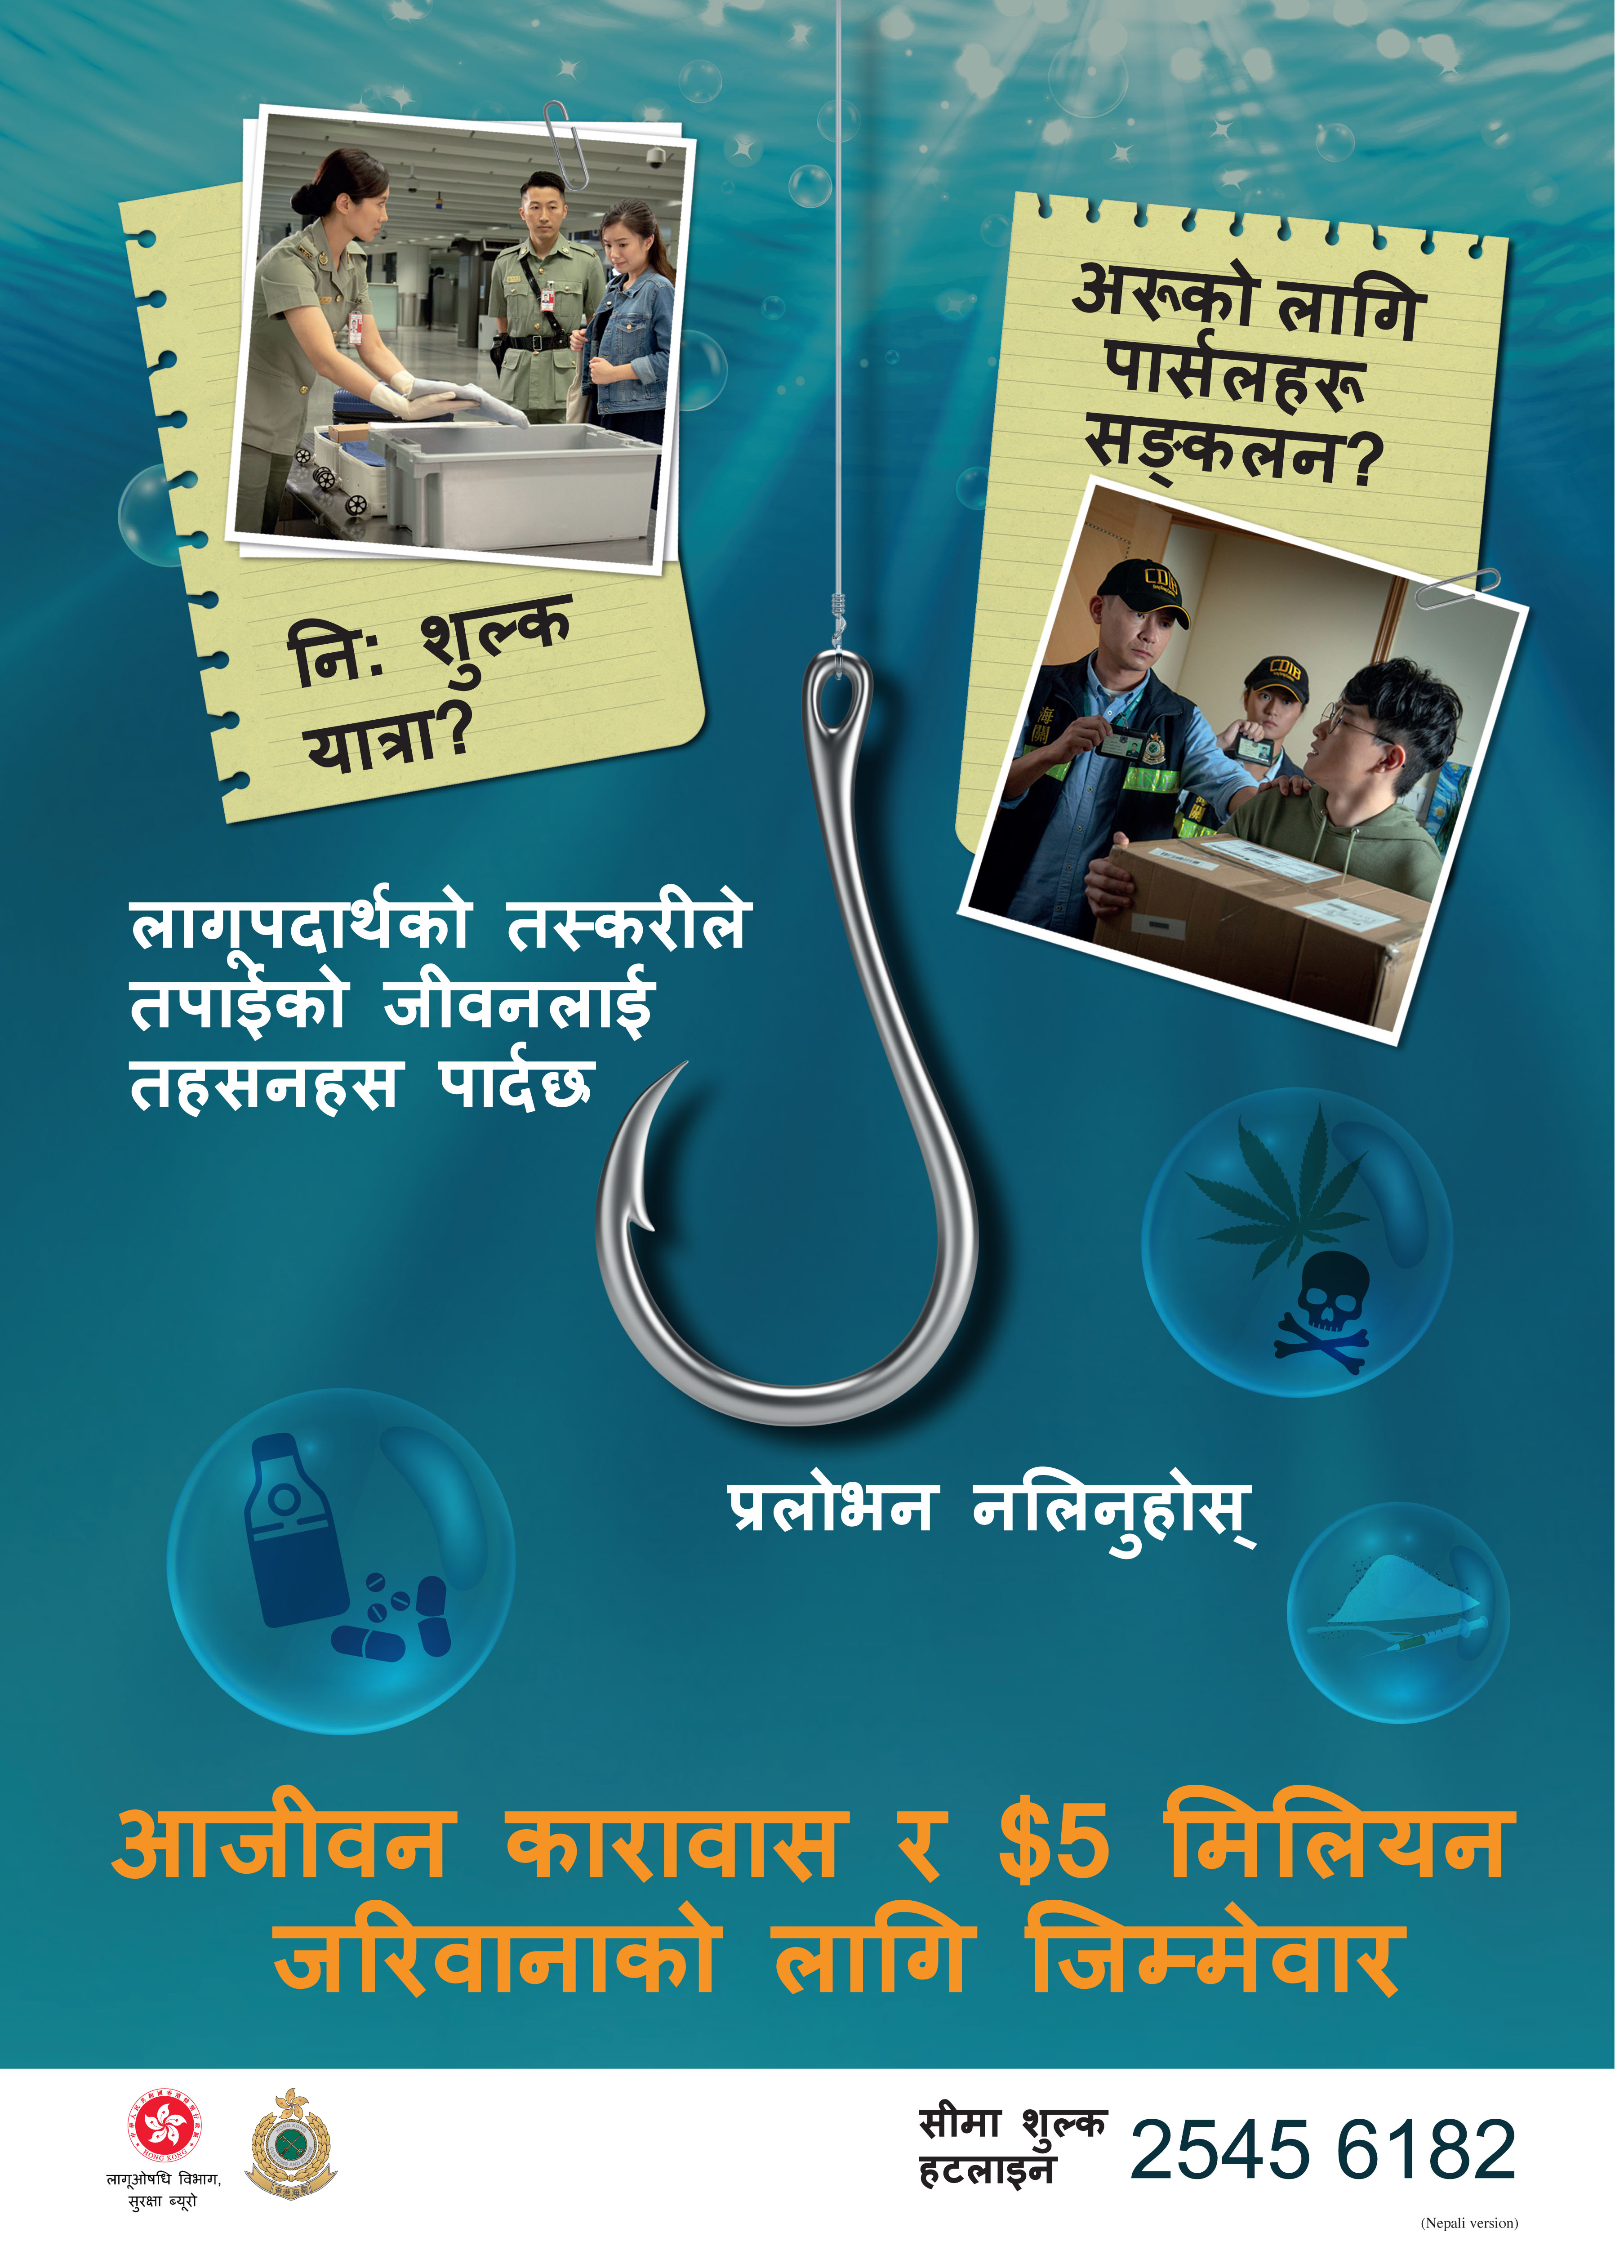 禁毒海报「贩毒诱害，切勿上钓」- 尼泊尔文版本